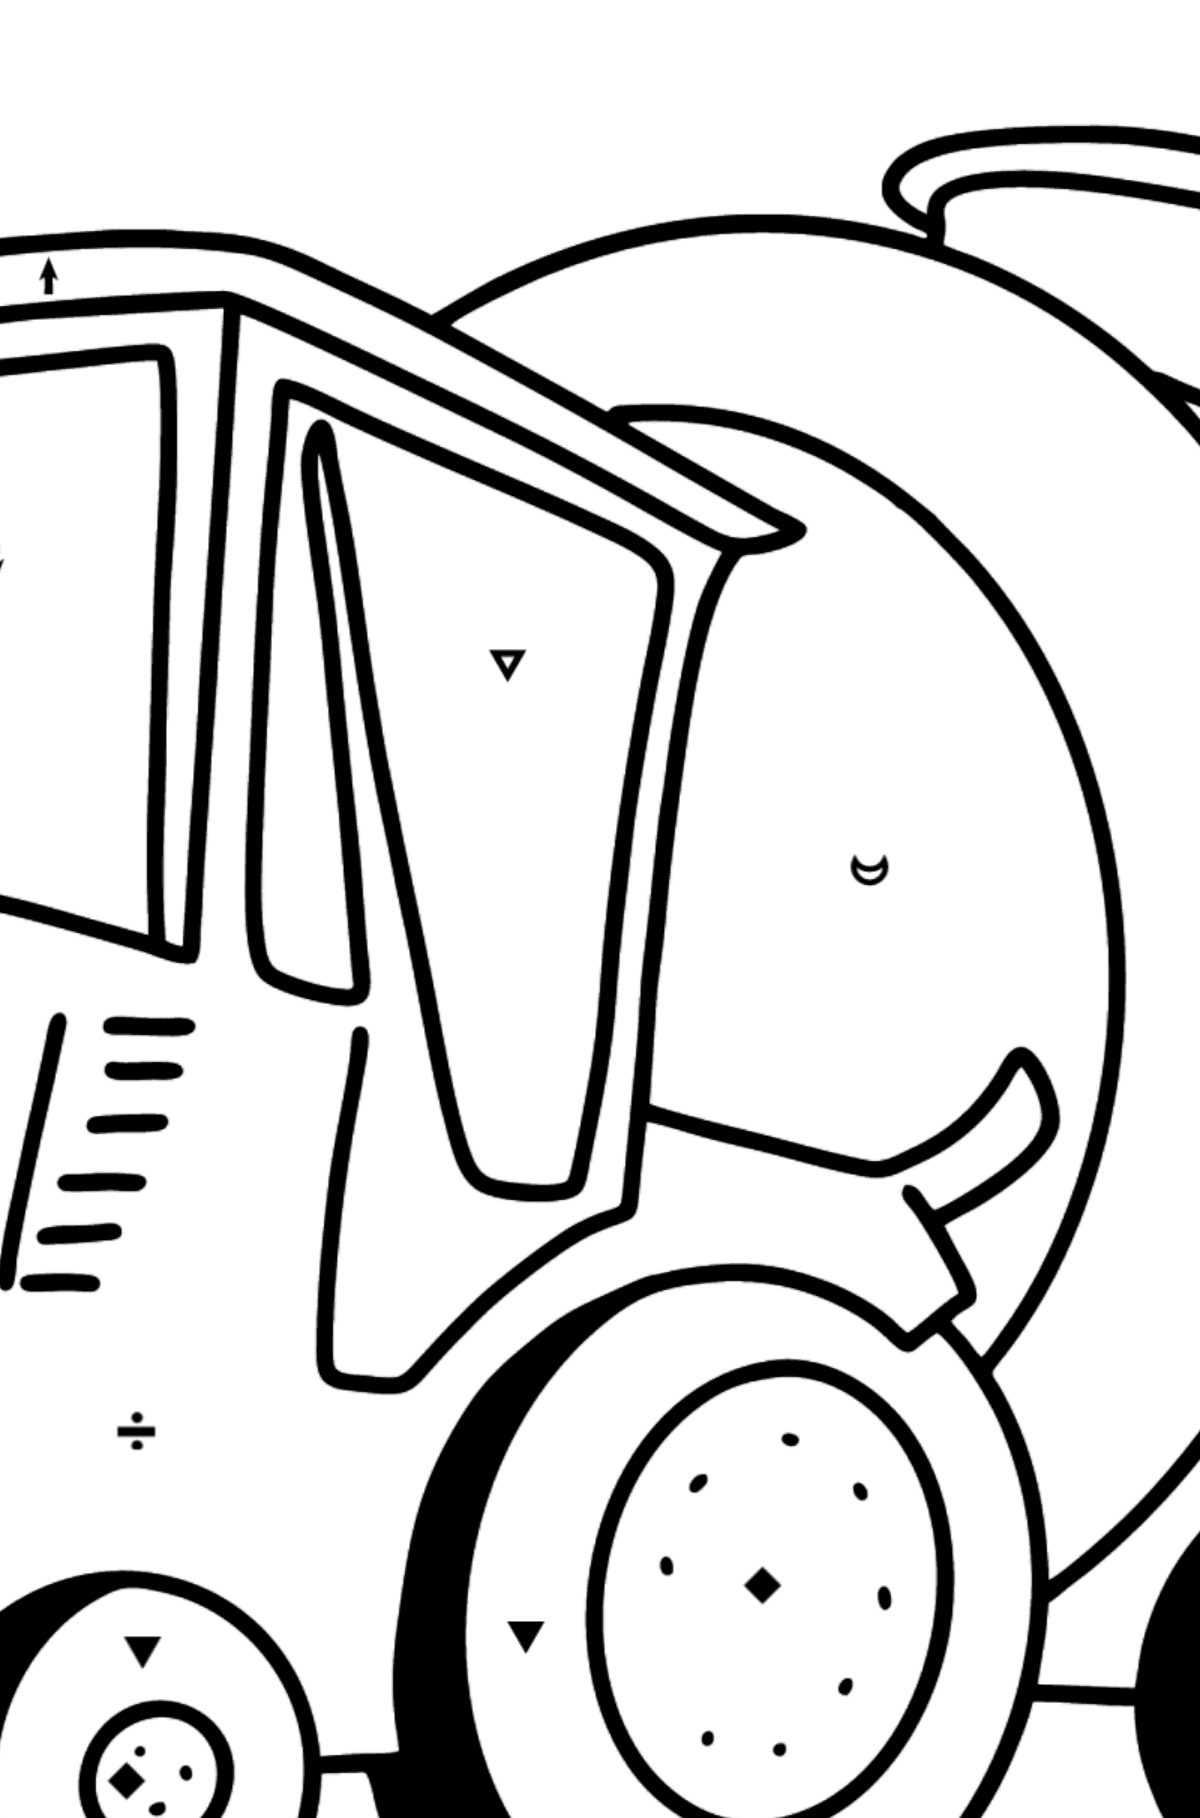 Coloriage - Tracteur avec remorque à eau - Coloriage par Symboles pour les Enfants